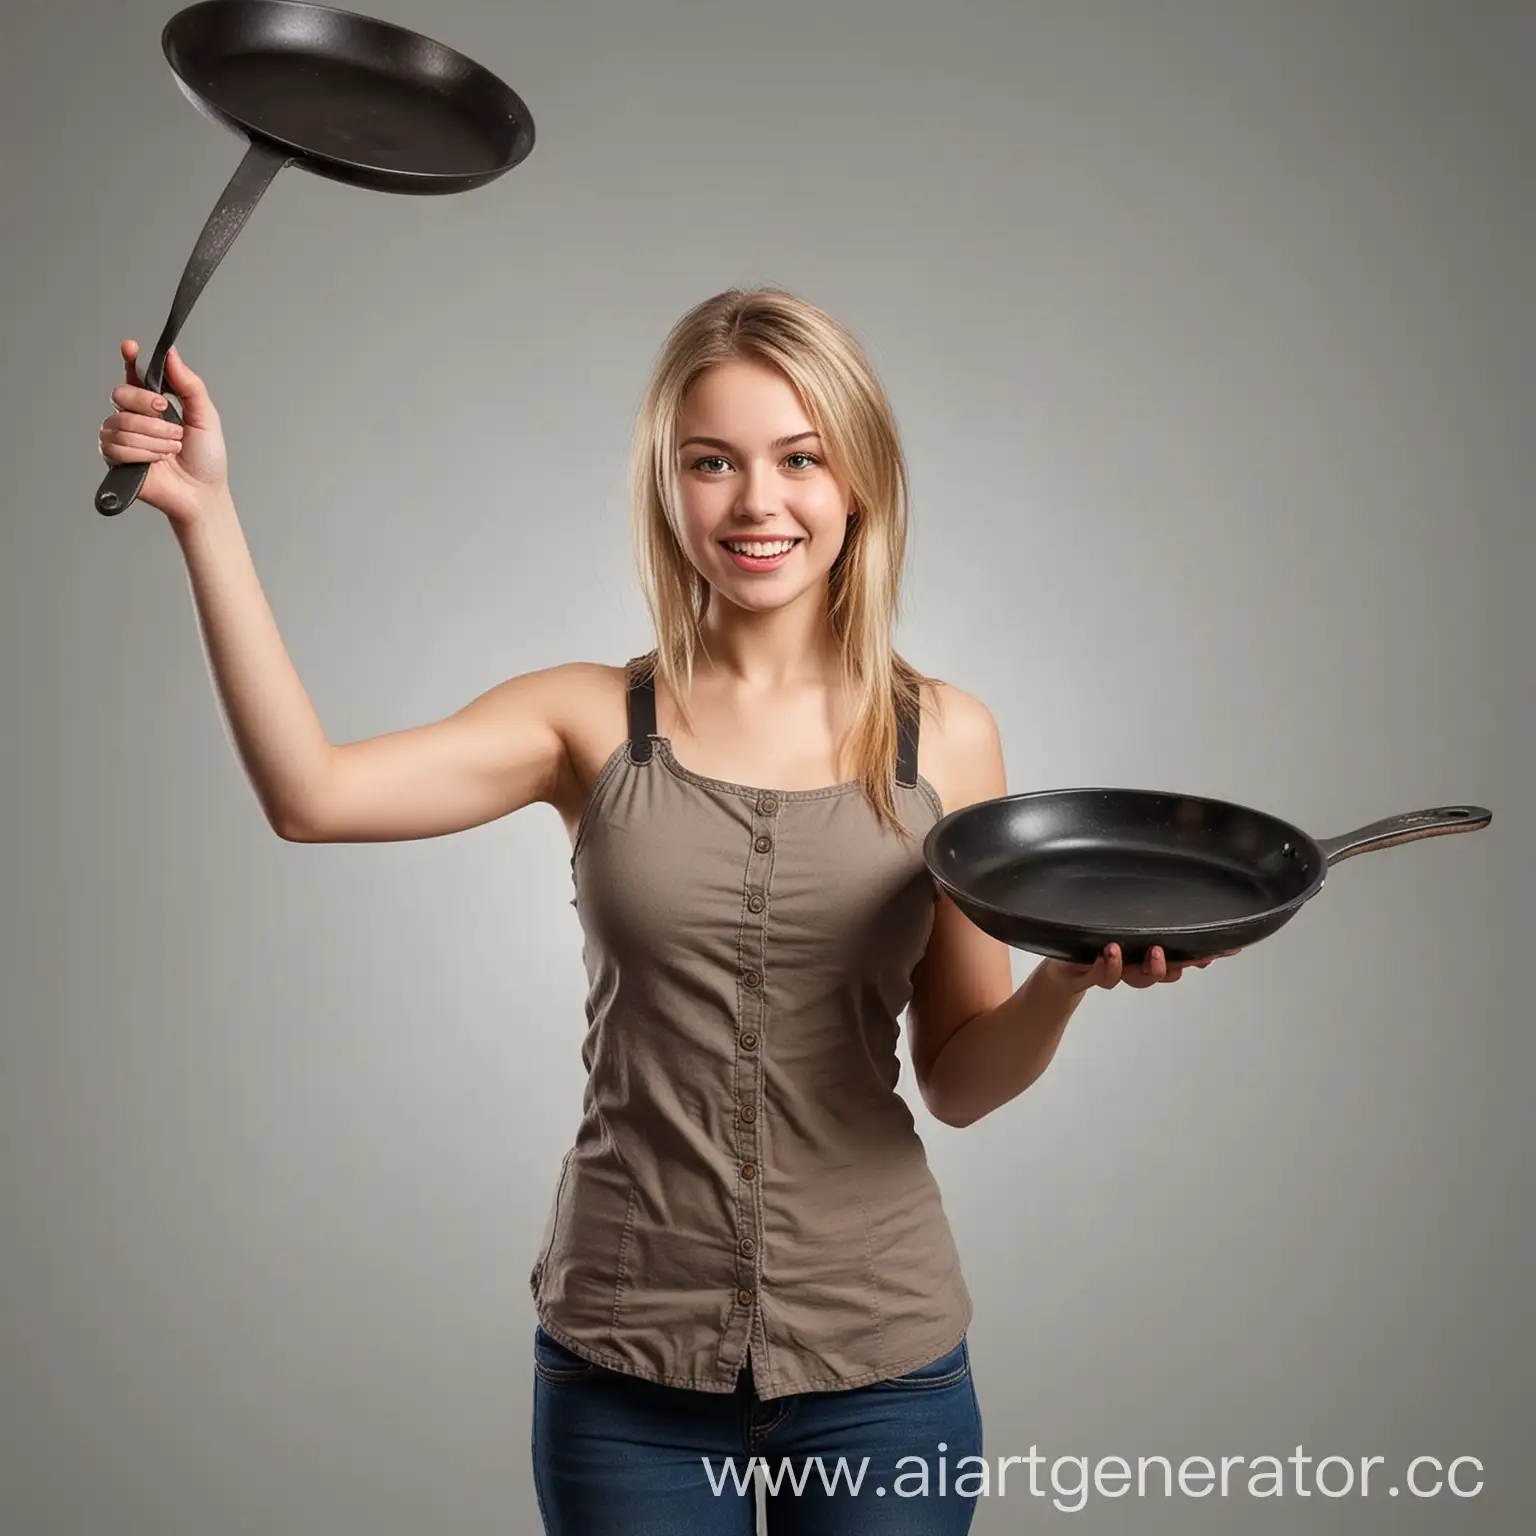 Красивая Девушка со сковородой в руках, сковорода поднята вверх, формат PNG, размер 664 на 617 пикселей